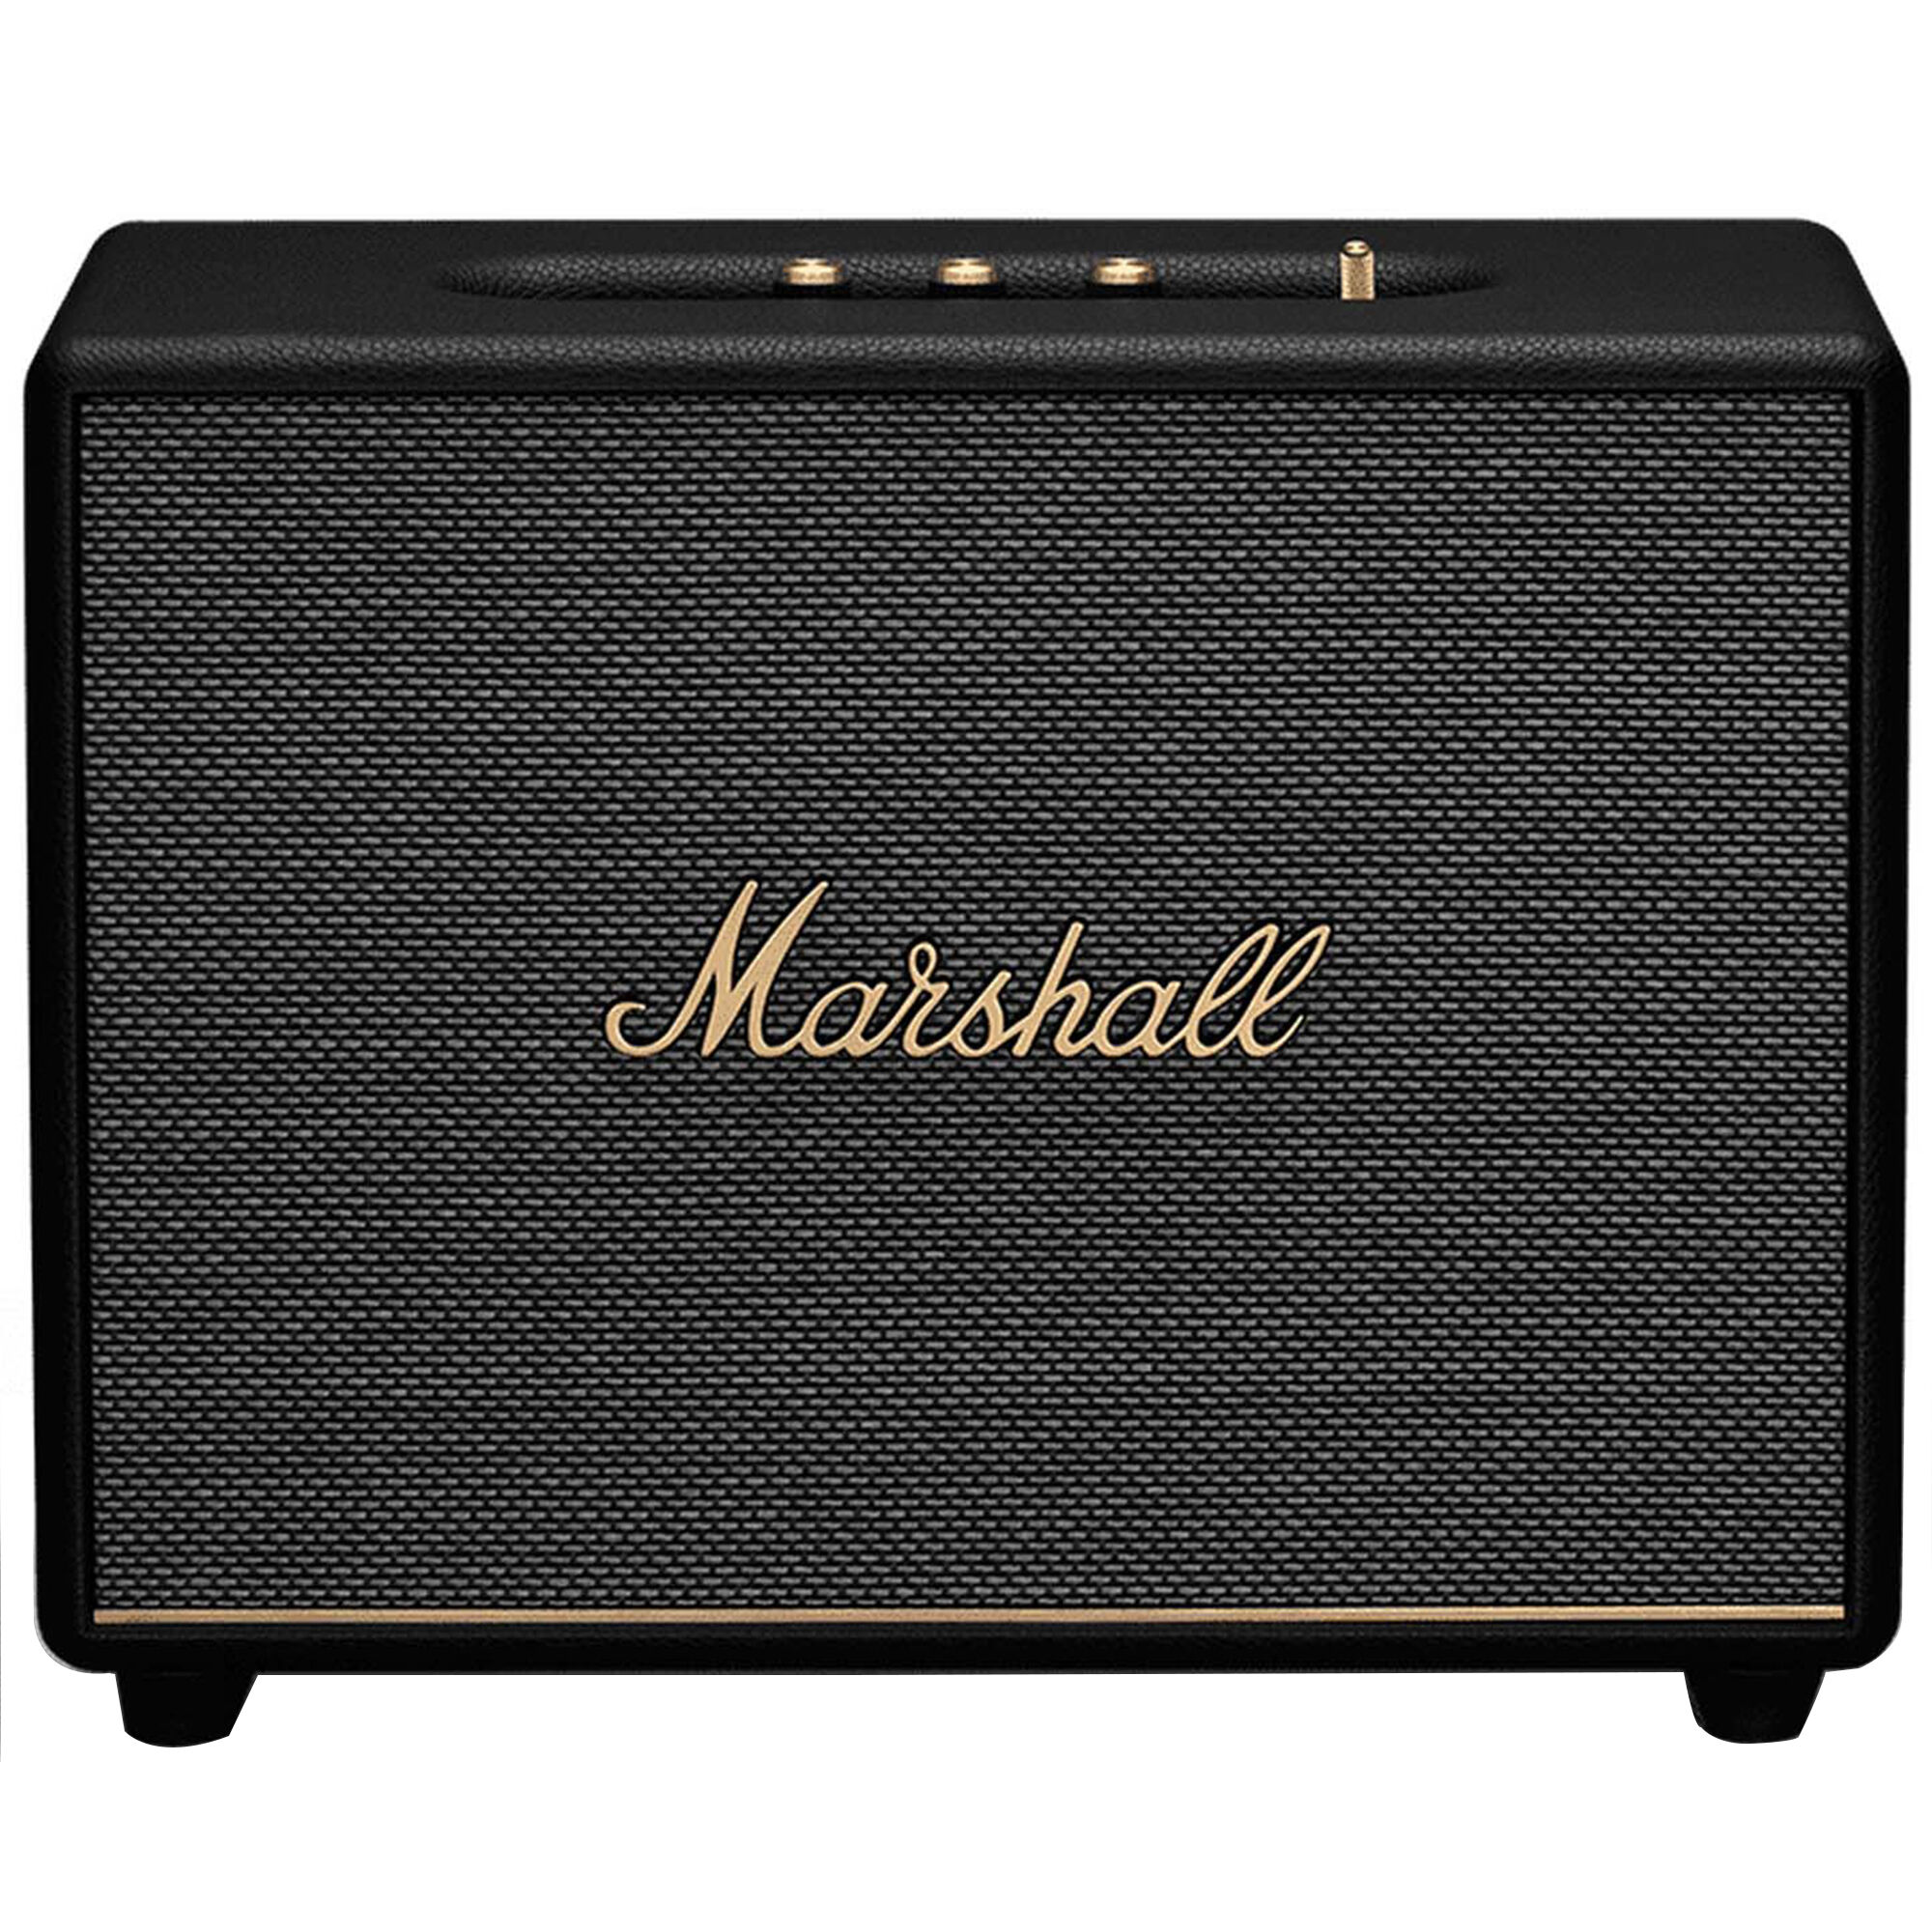 Marshall Woburn III Bluetooth Speaker - Black | P.C. Richard & Son